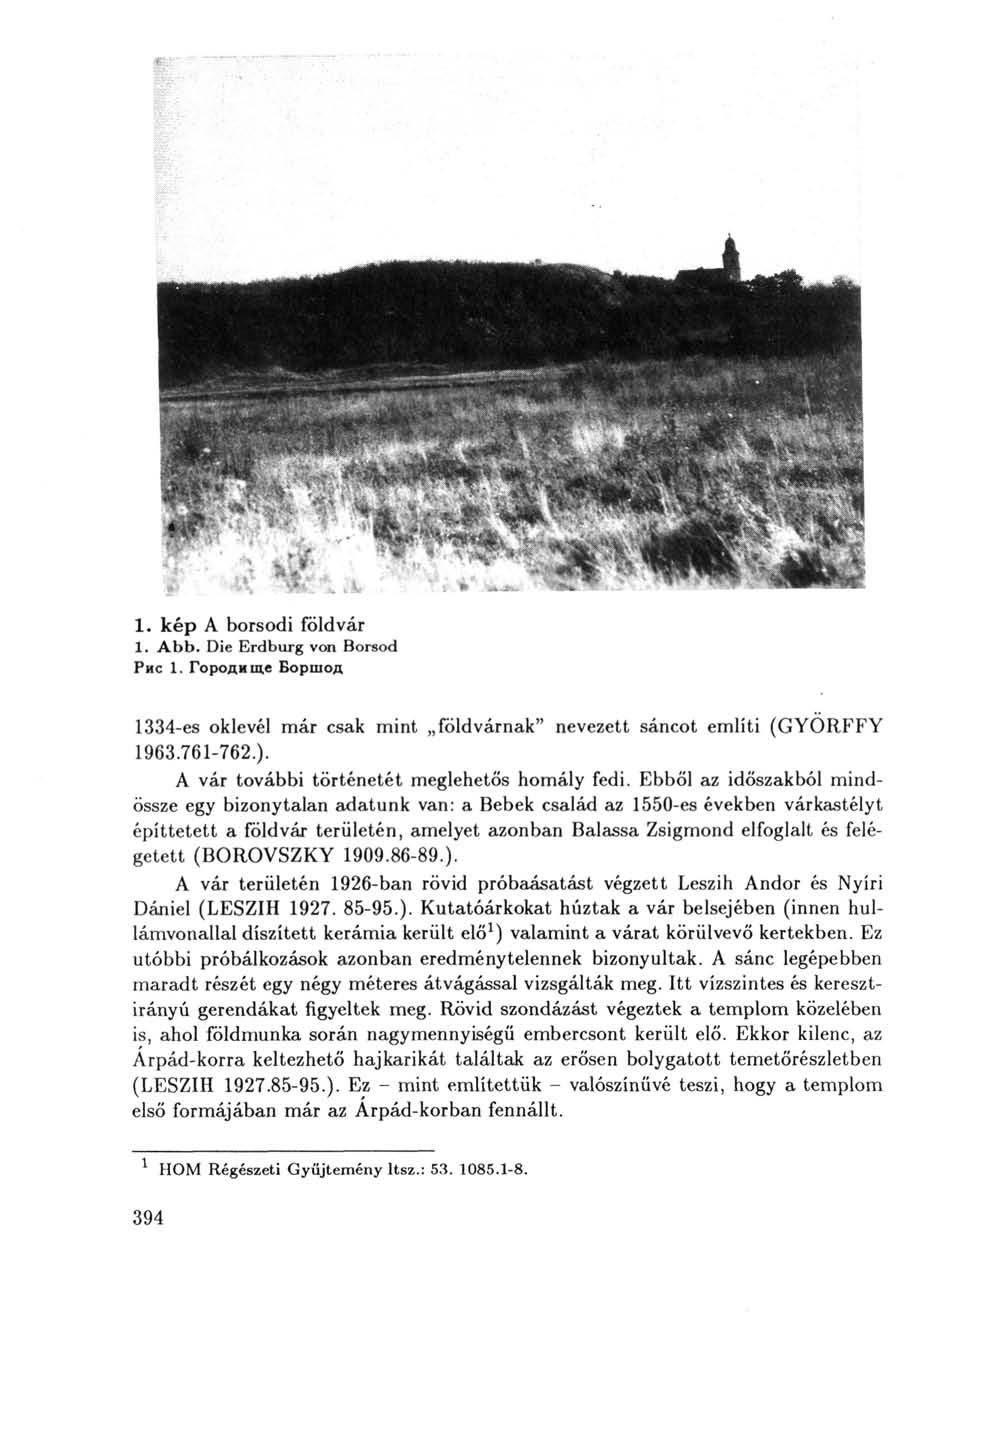 1. kép A borsodi földvár 1. Abb. Die Erdburg von Borsod Рис 1. Городище Боршод 1334-es oklevél már csak mint földvárnak" nevezett sáncot említi (GYÖRFFY 1963.761-762.).